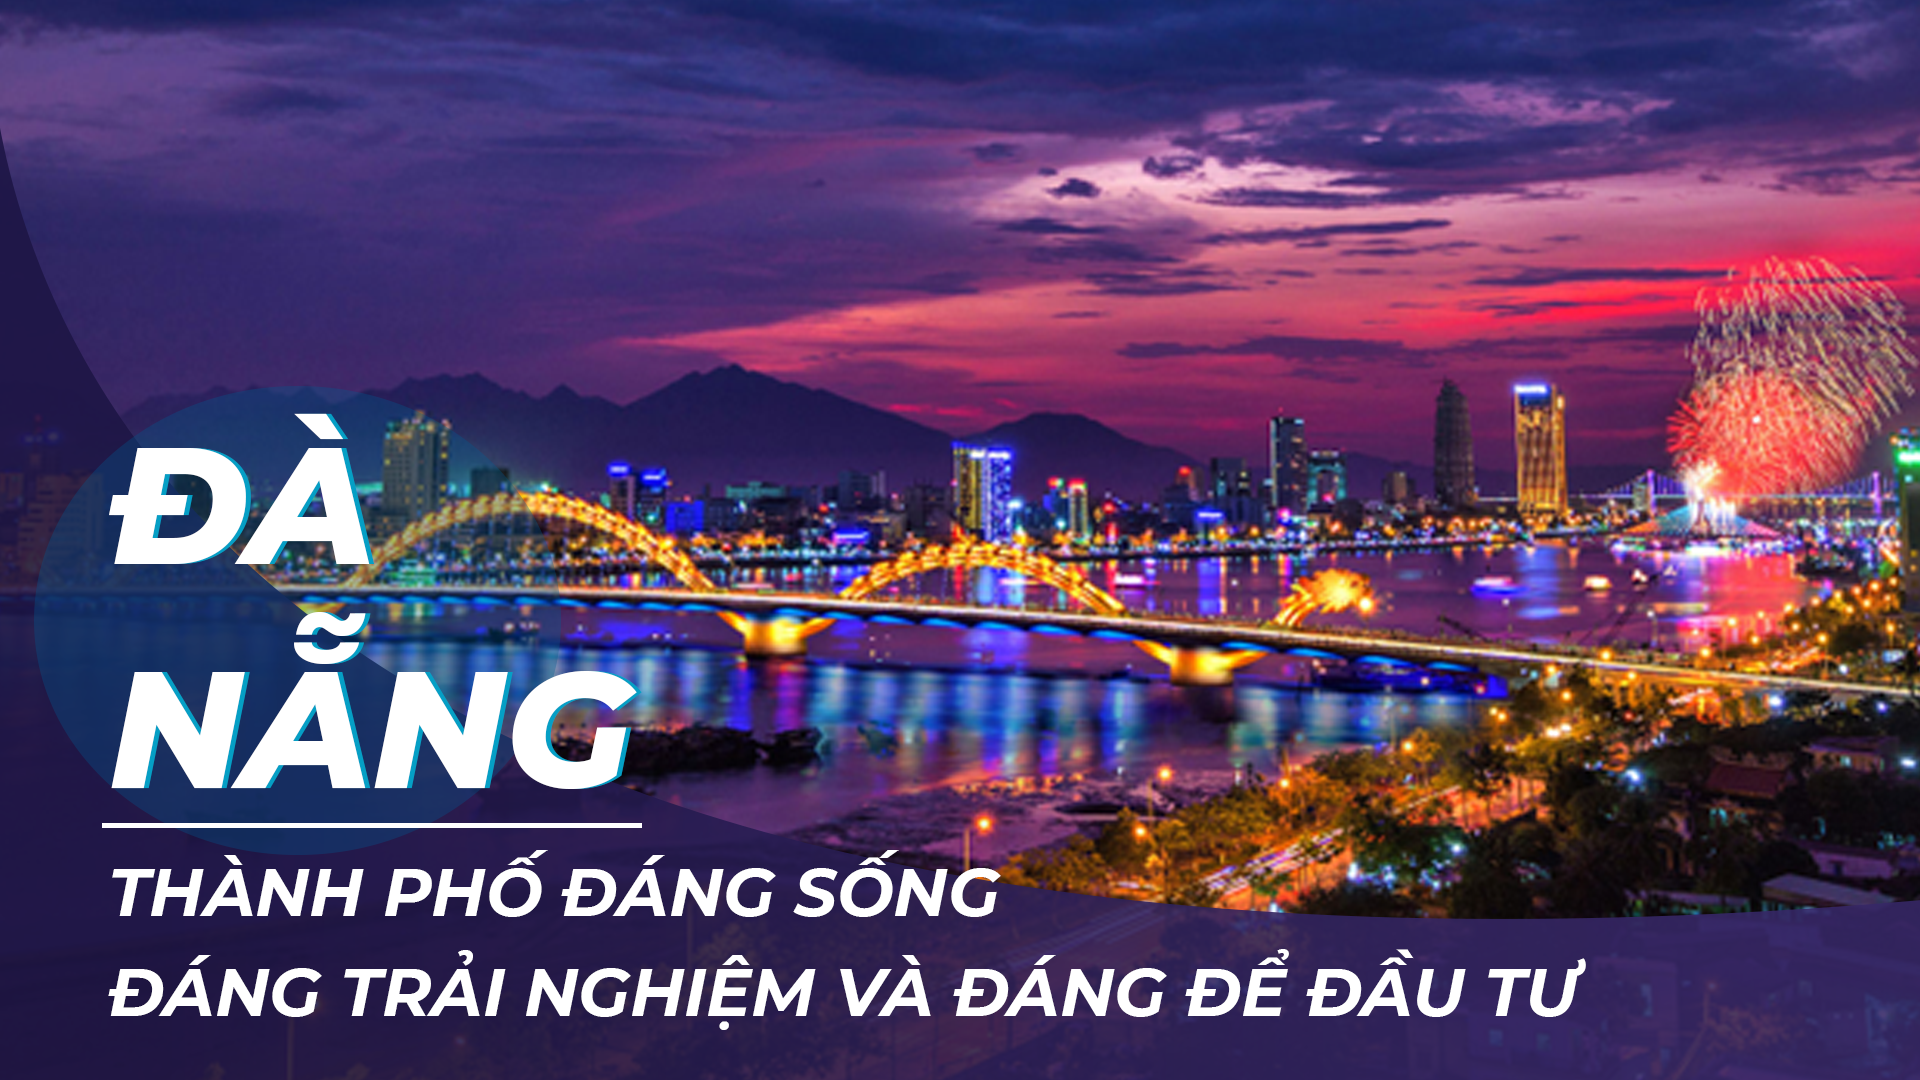 Đã đến lúc Đà Nẵng cần thay đổi để trở thành Thành phố đáng sống của khu vực và thế giới - Ảnh 5